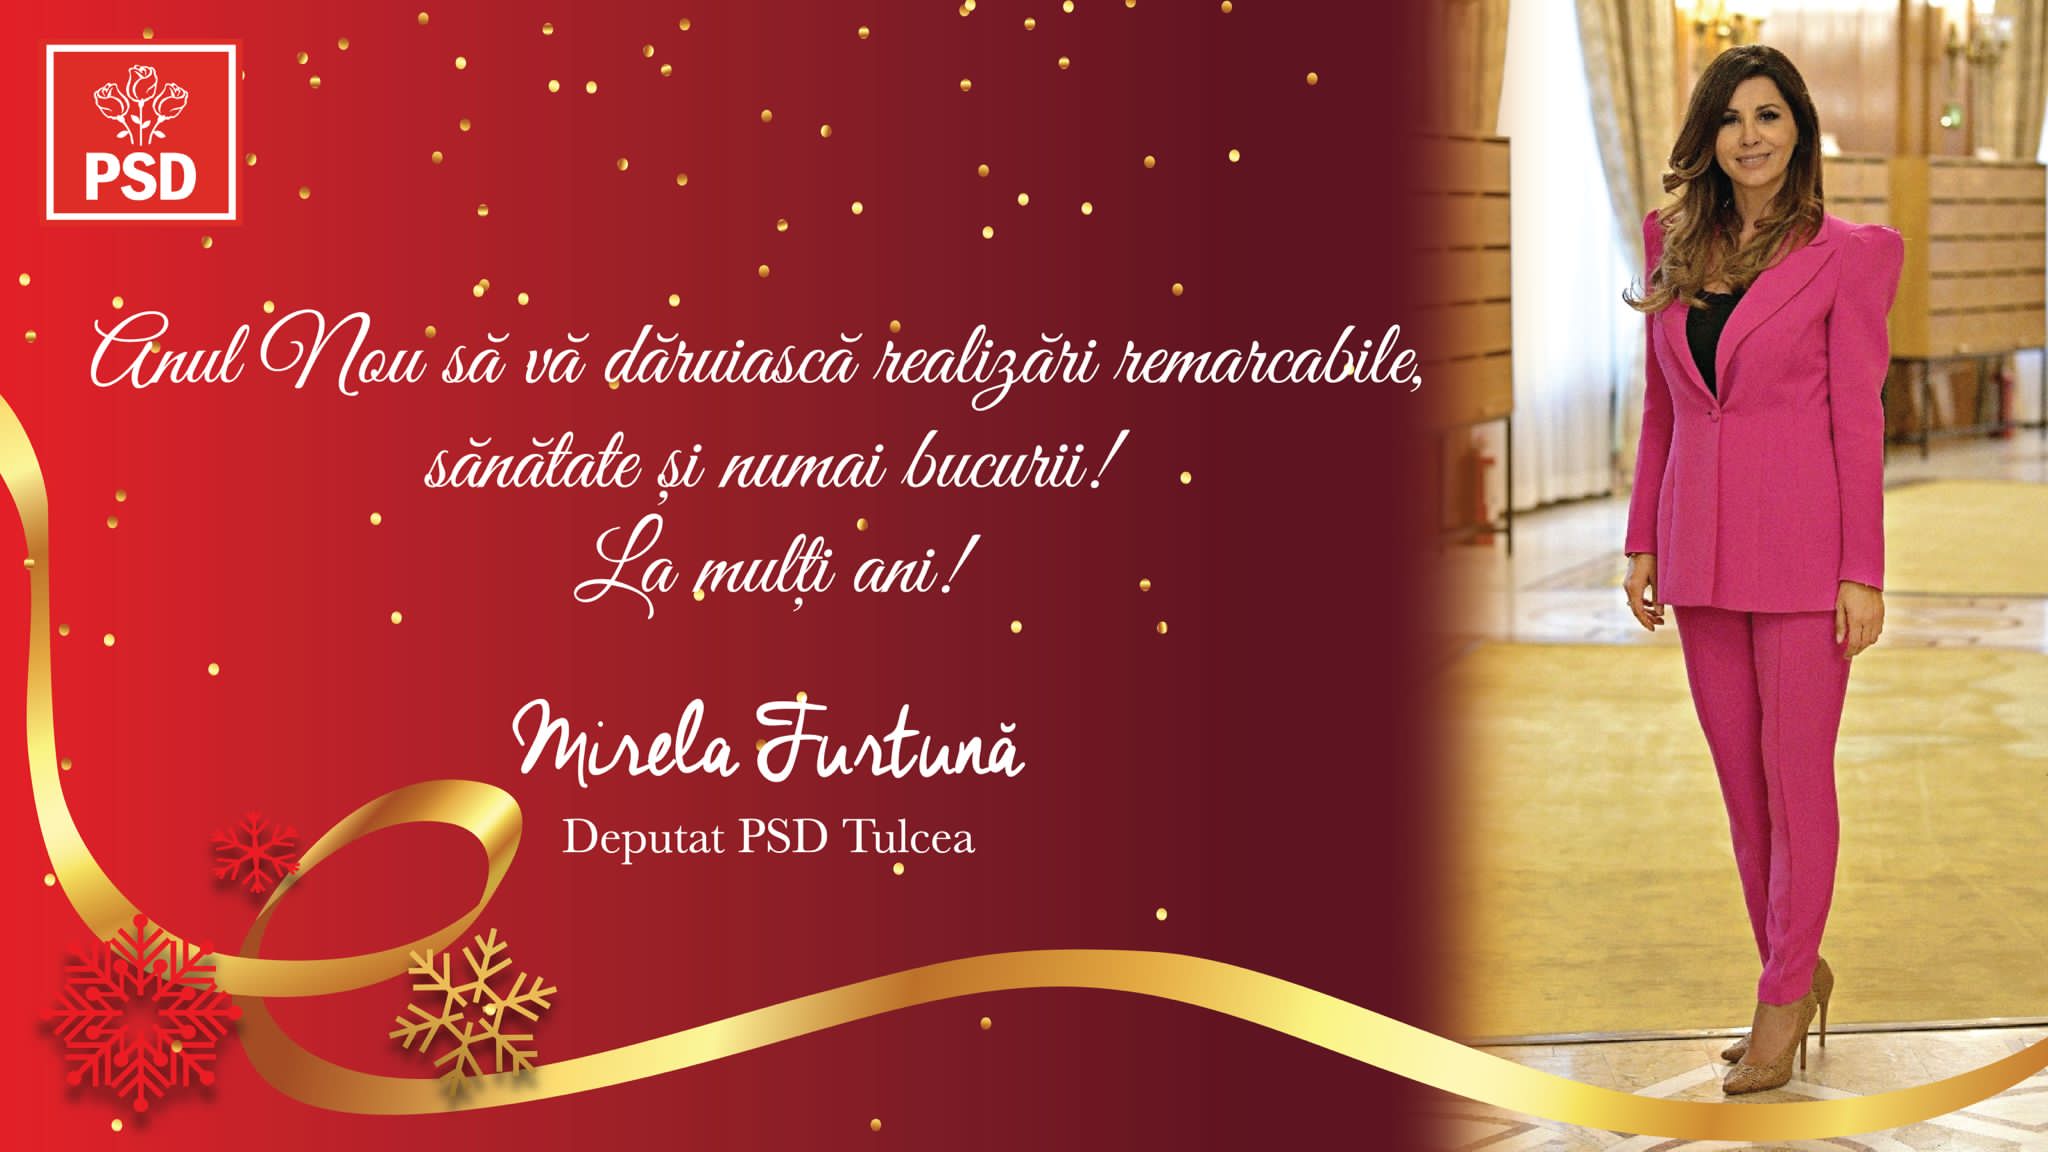 Mirela Furtună, deputat PSD Tulcea, vă urează „Un an nou fericit”